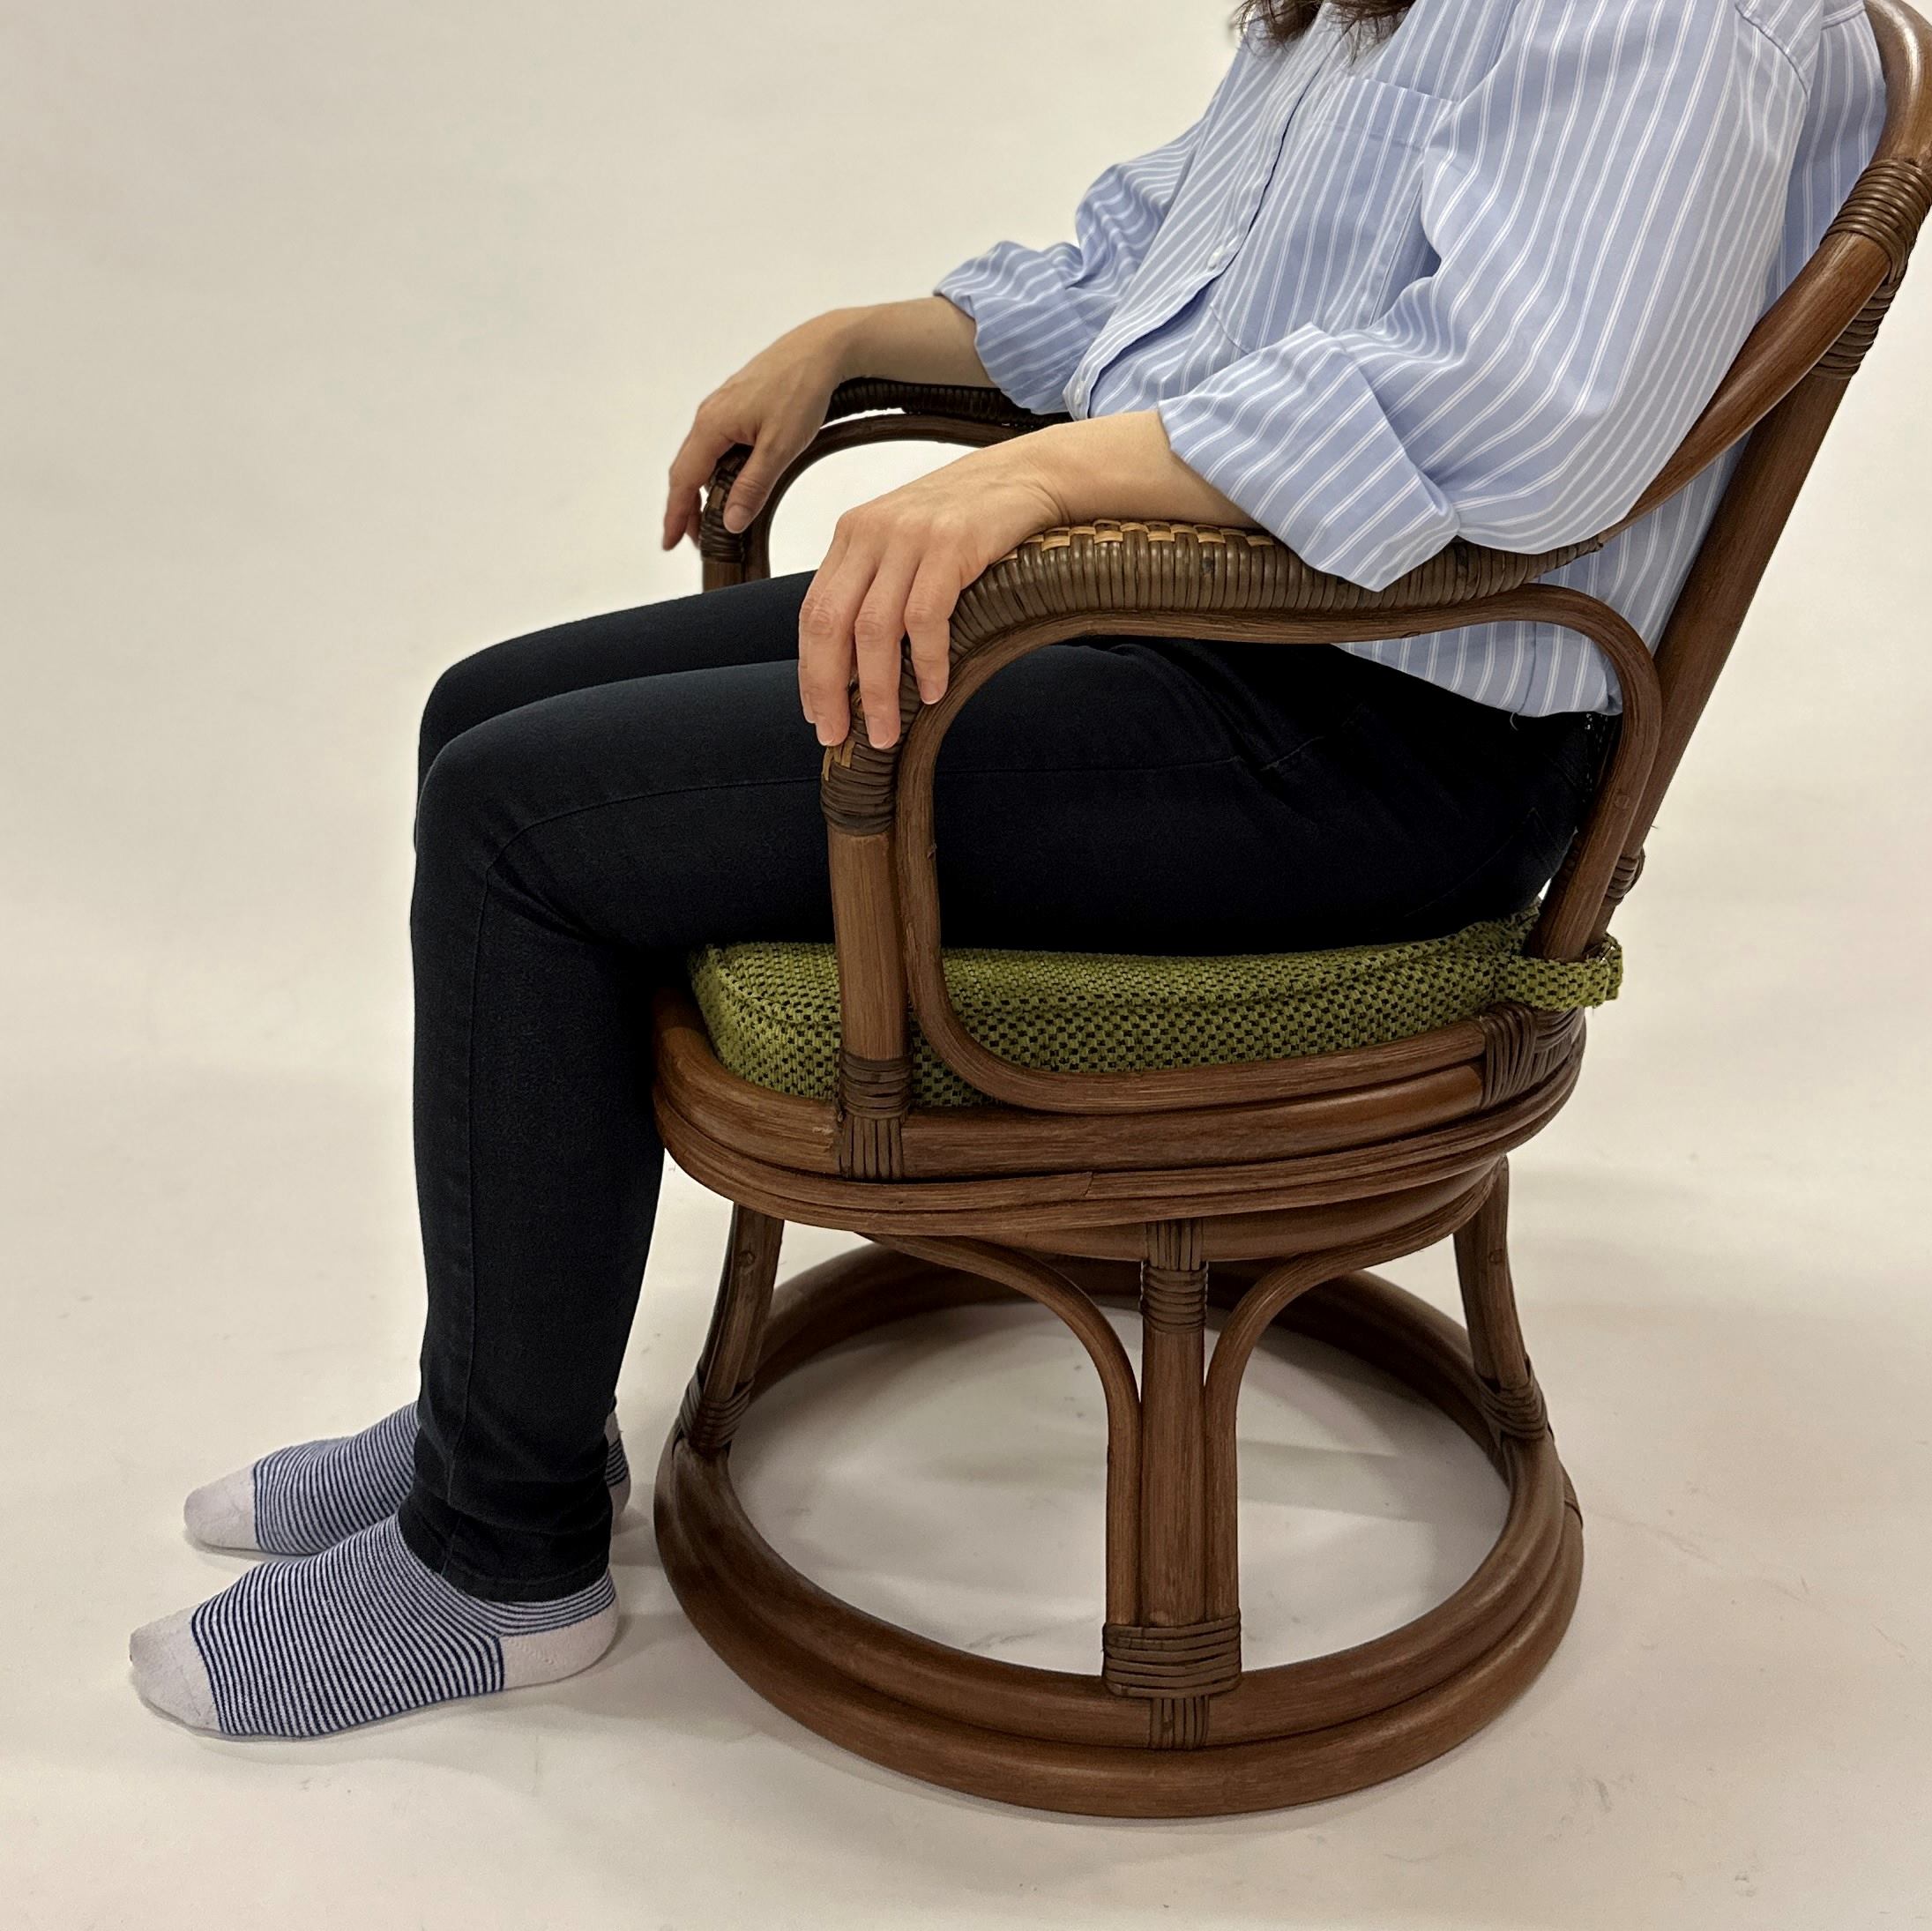 立ち上がりがラクなラタンの回転椅子 | 朝日新聞モール